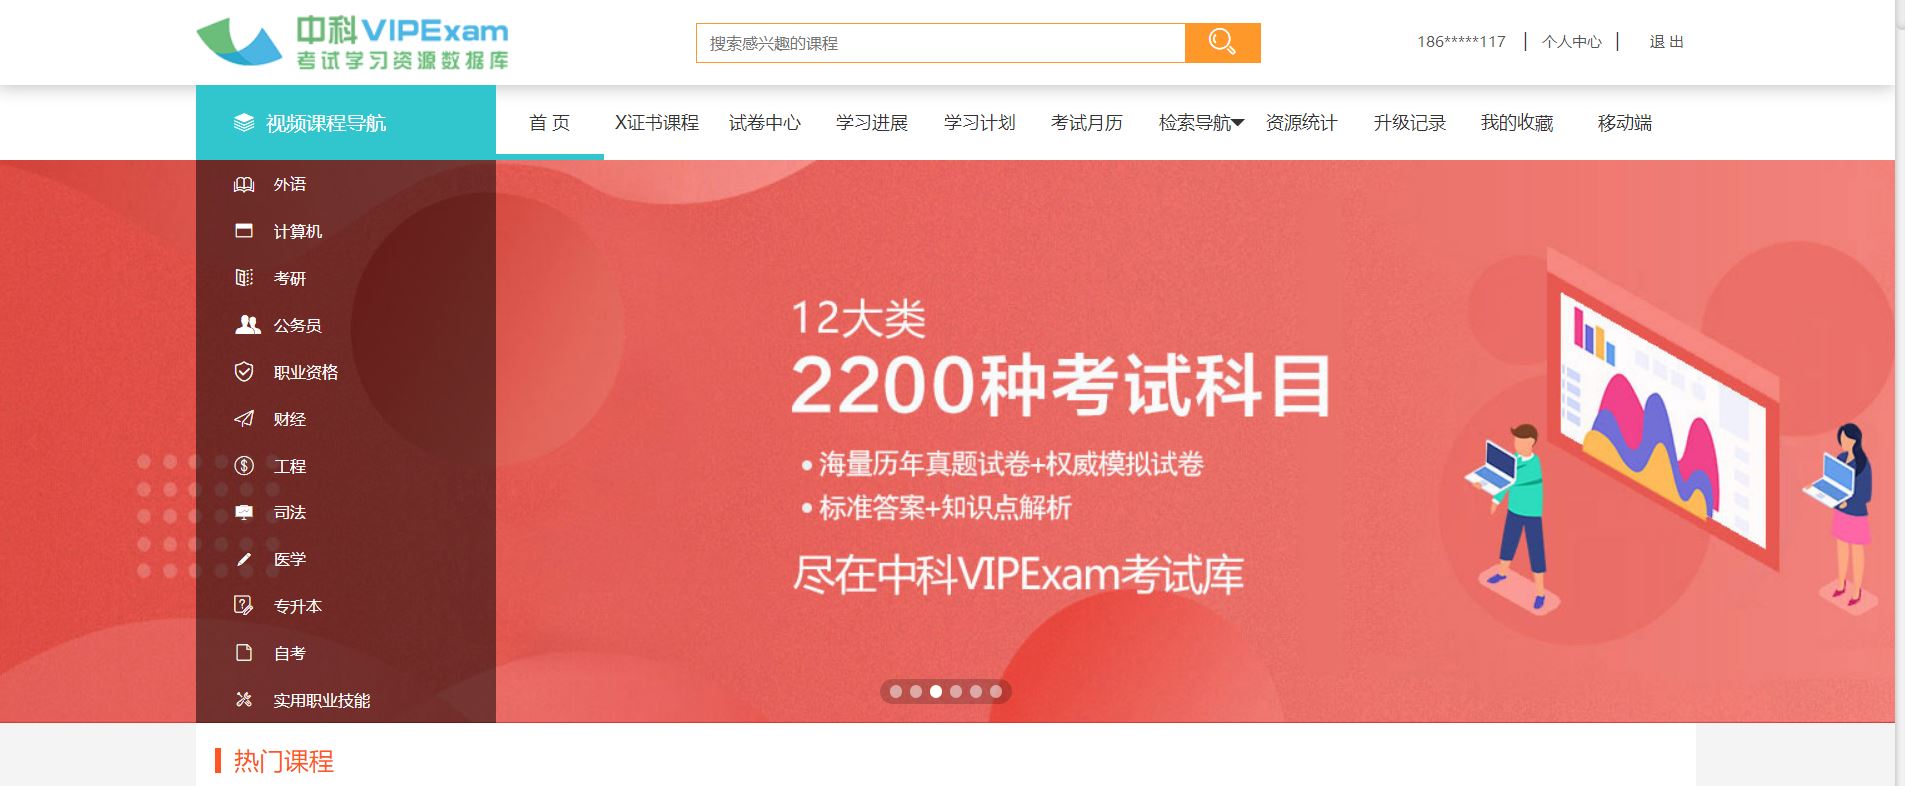 中科VIPExam考試學習資源數據庫